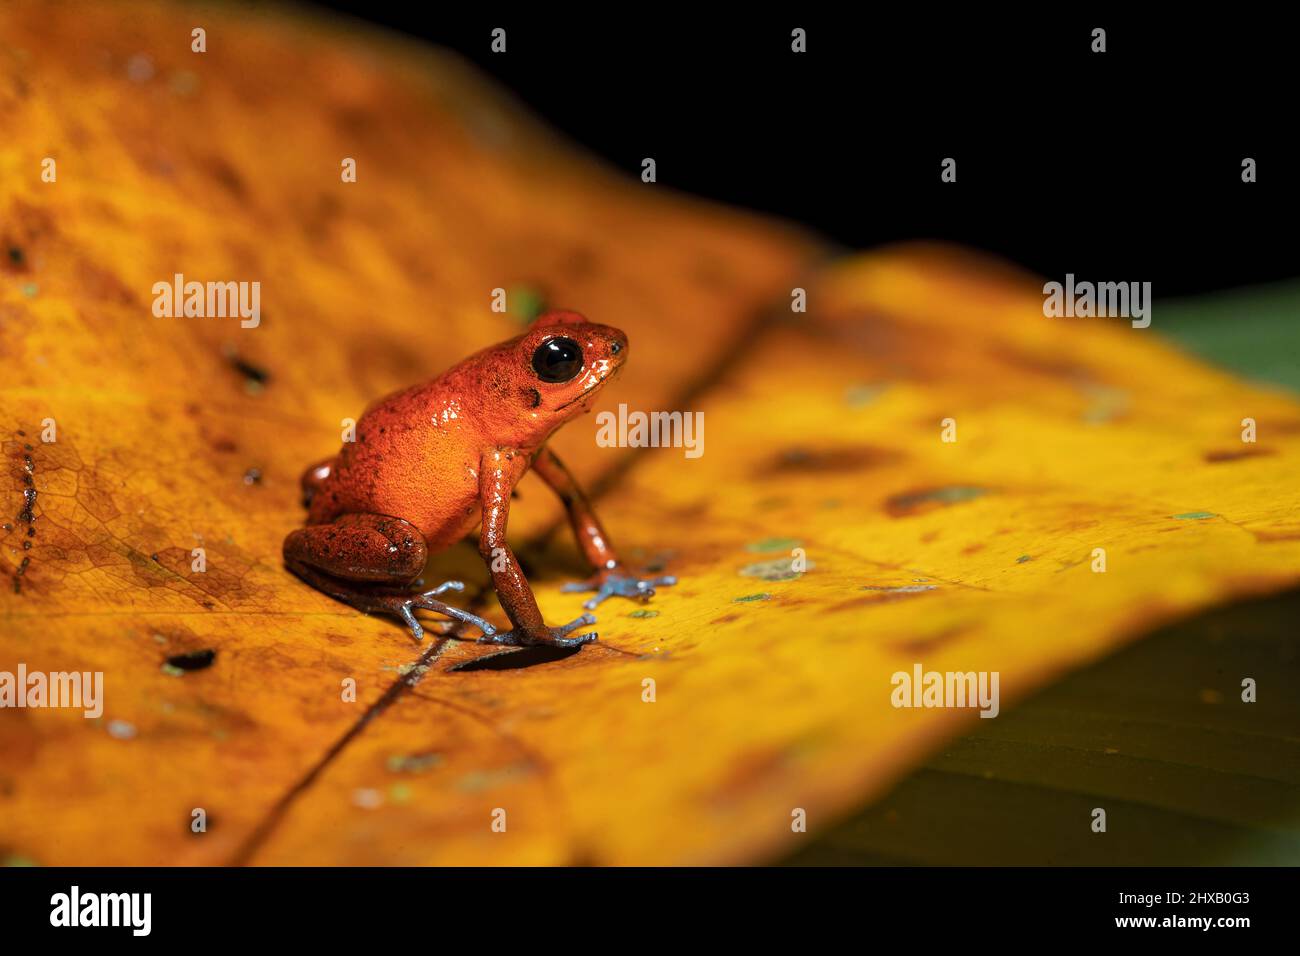 La rana venenosa de fresa (Oophaga pumilio, anteriormente Dendrobates pumilio) es una especie de rana venenosa de dardo Foto de stock